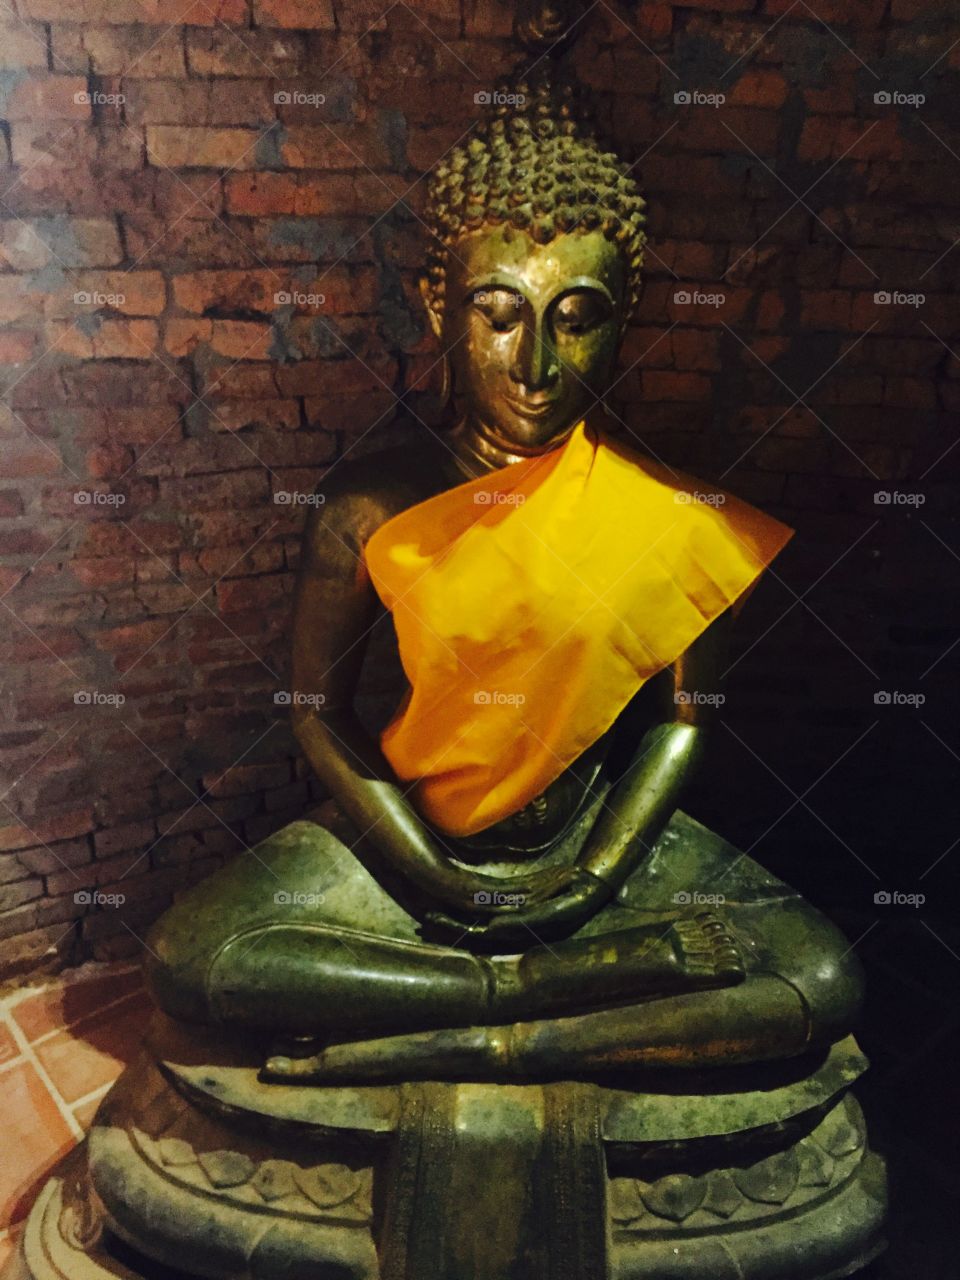 Clad in yellow Buddha